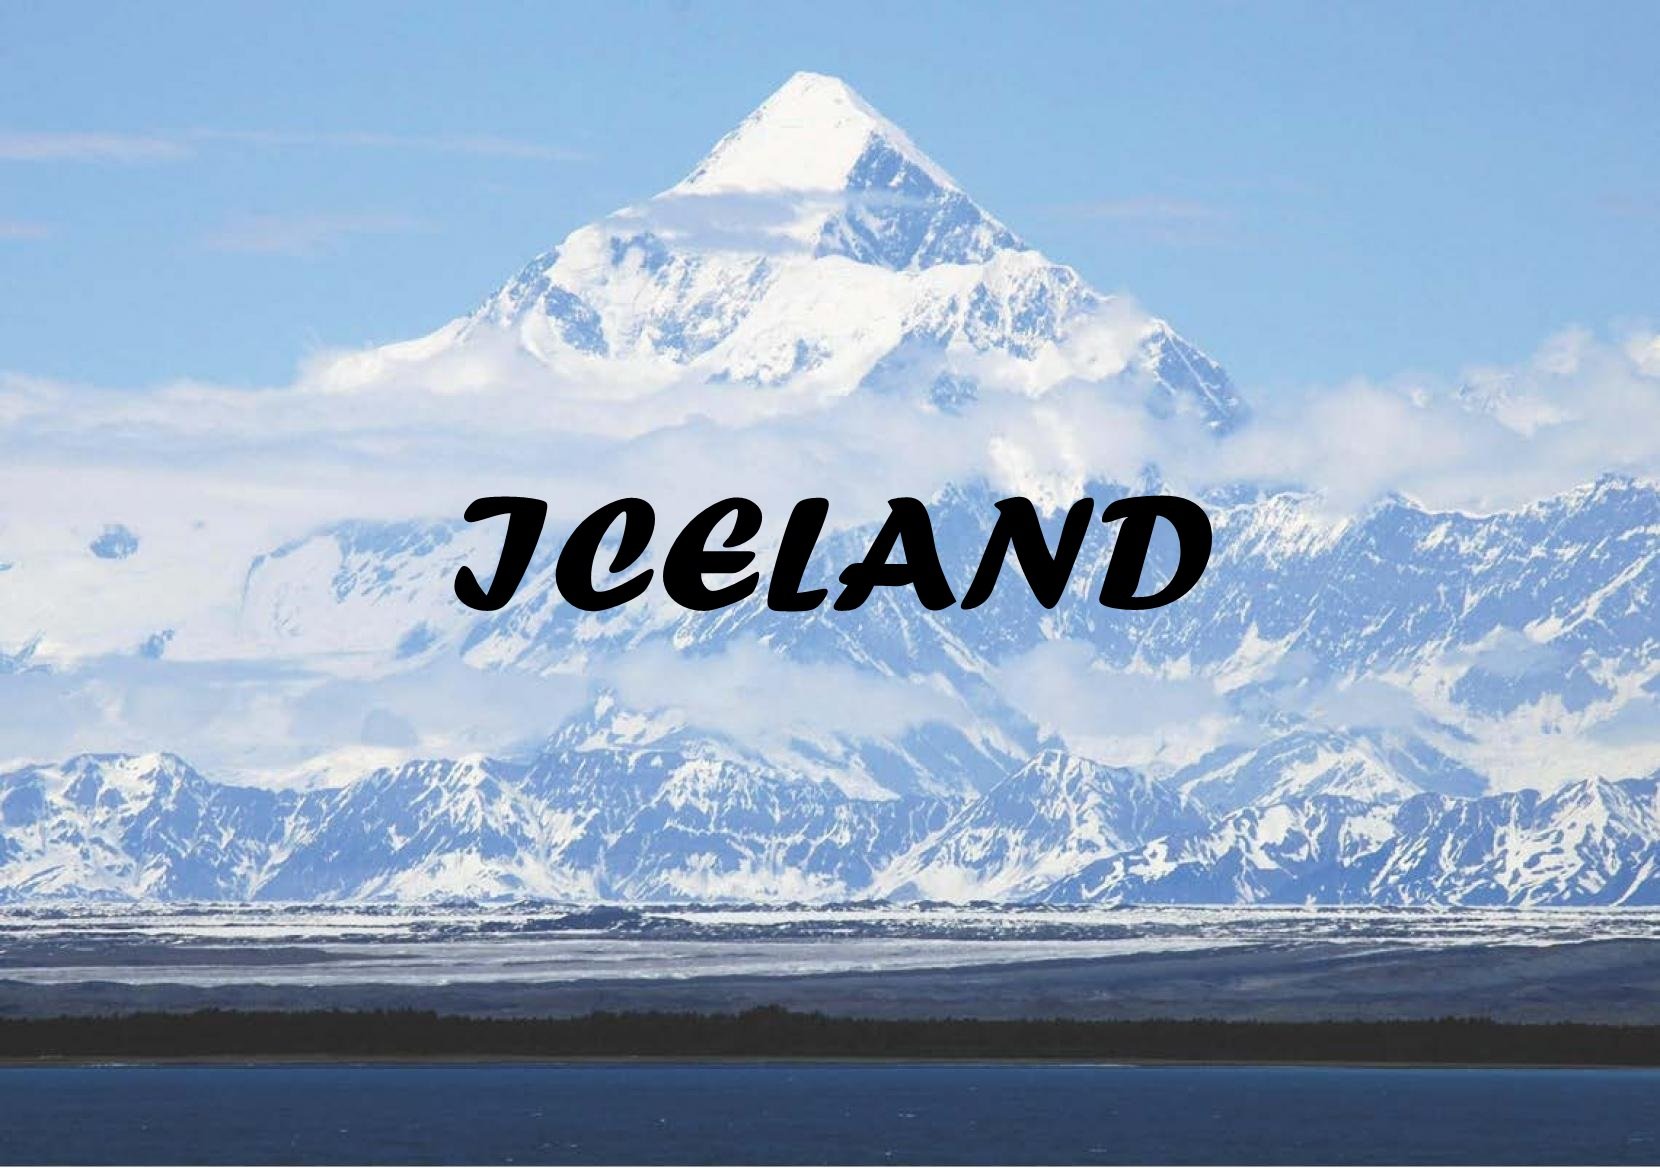 ไอซ์แลนด์ดินแดนในฝันของใครหลายคน